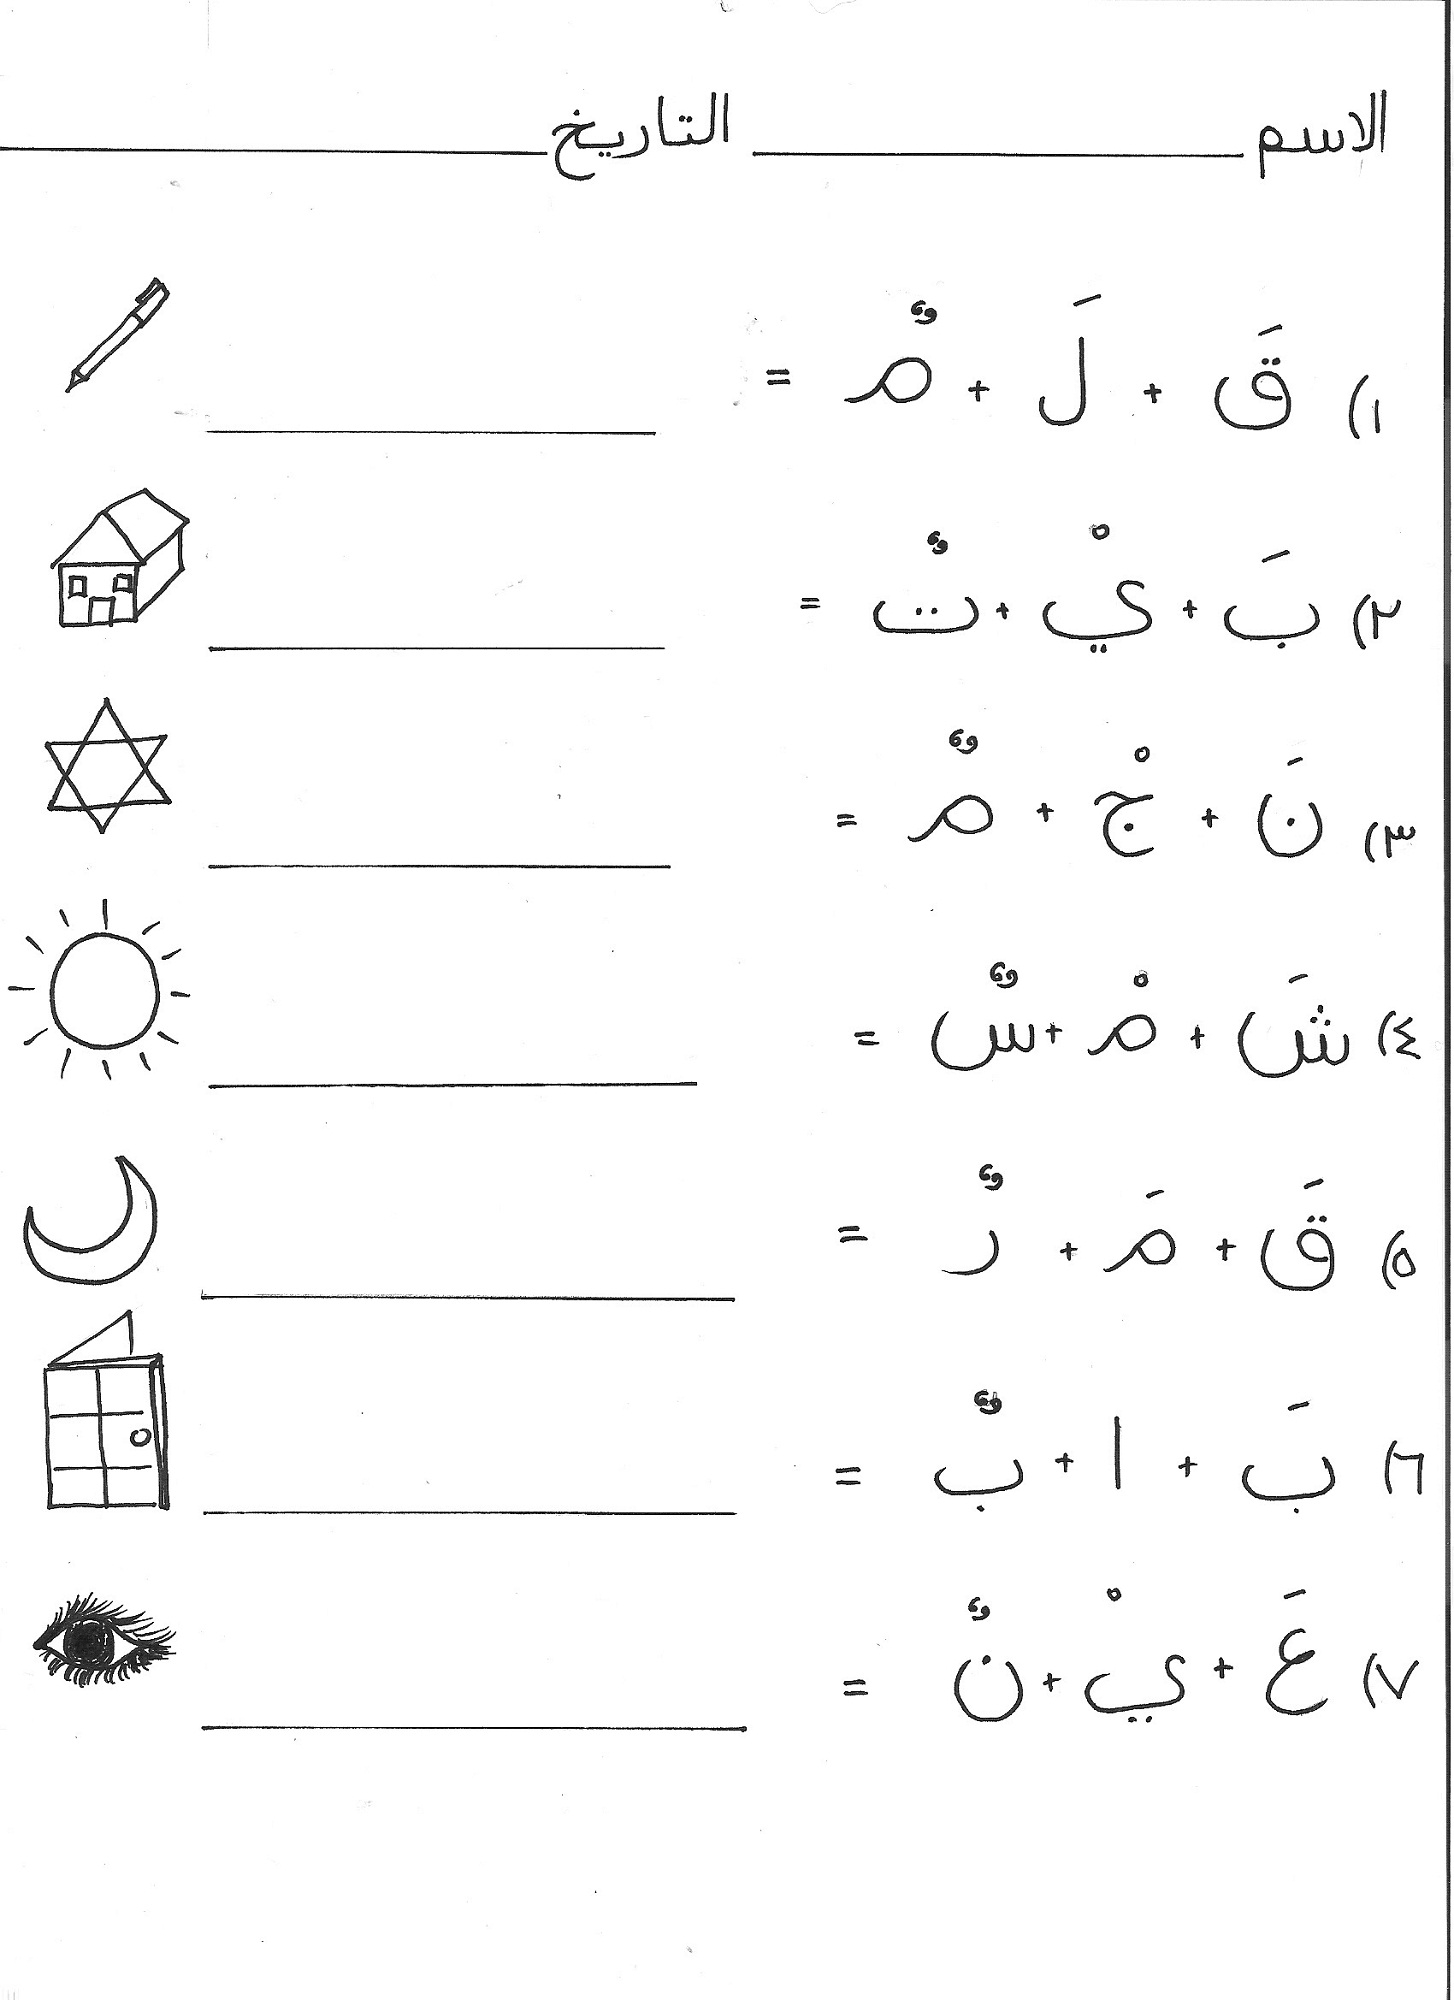 Arabic Alphabet Worksheets Activity Shelter Urdu Jor Tor For